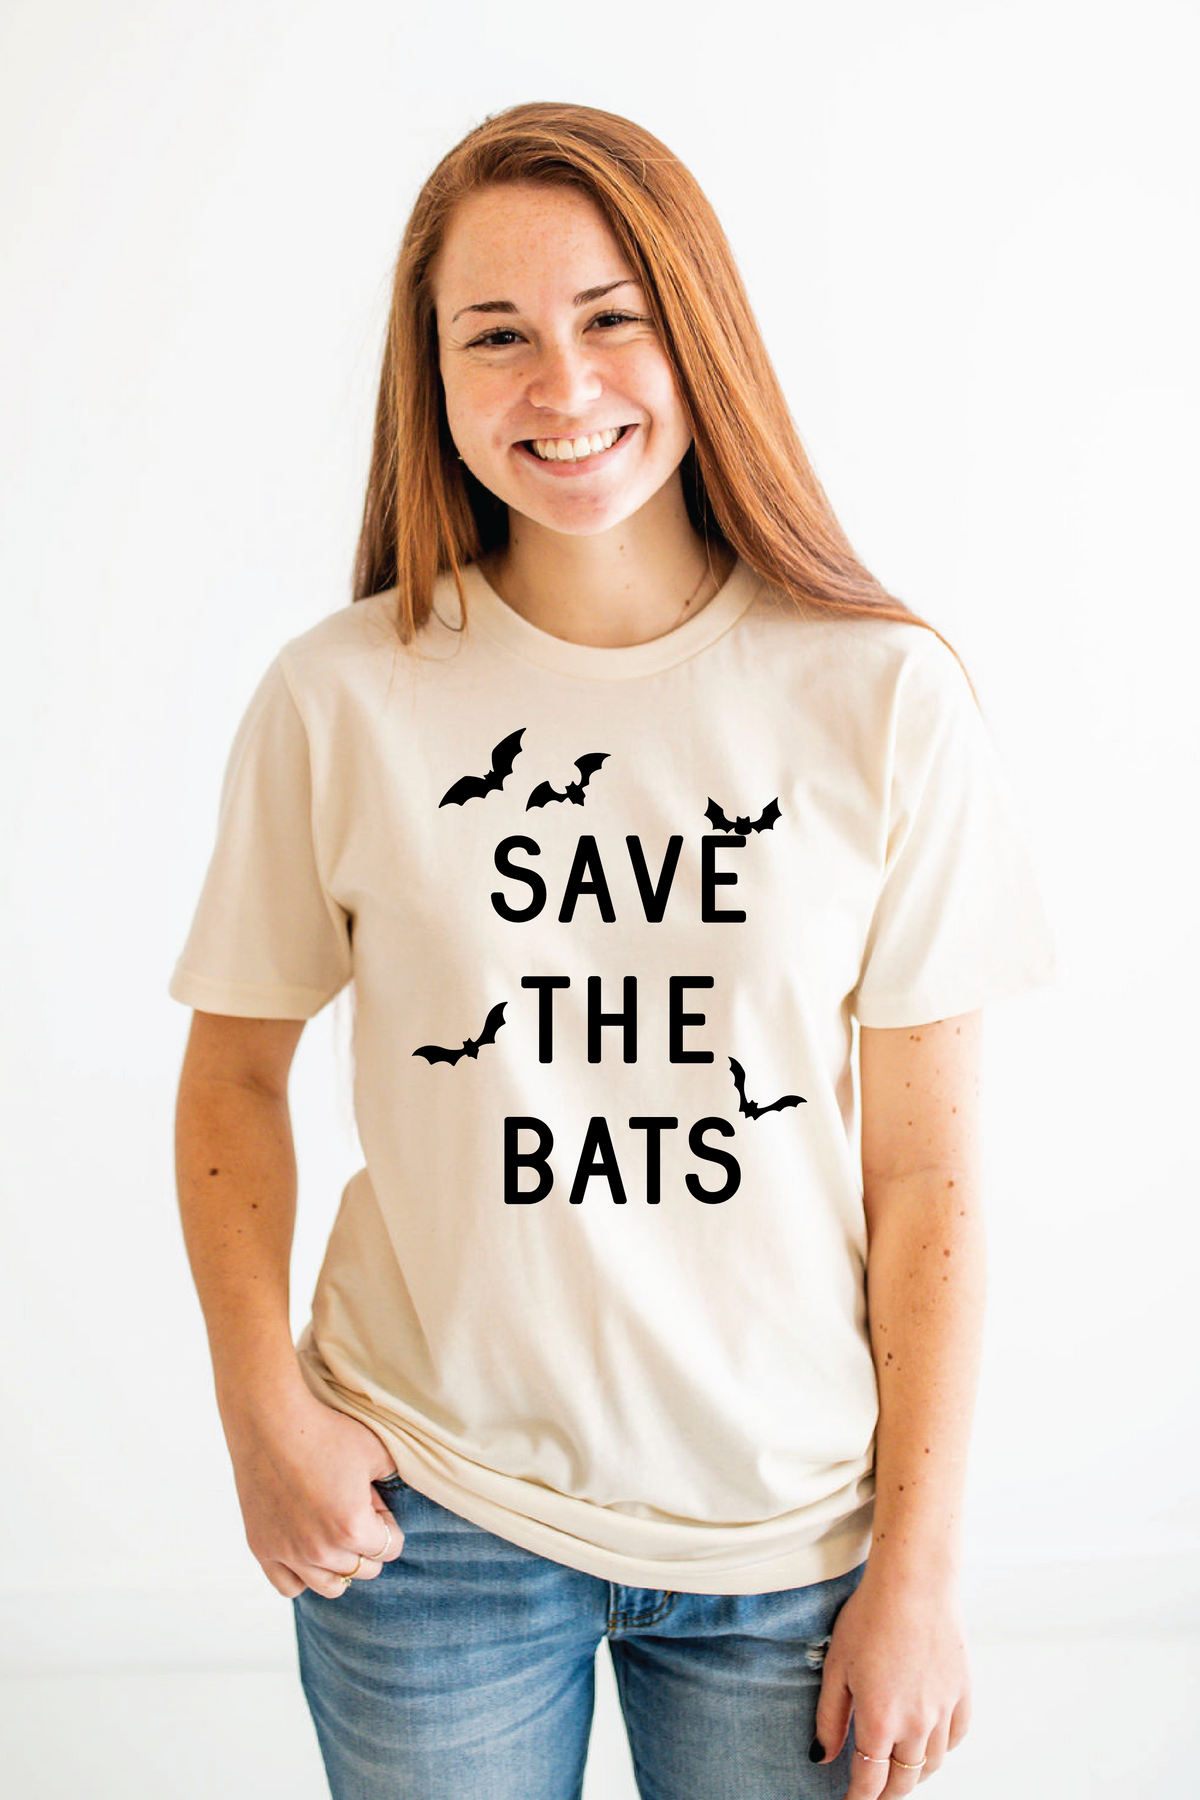 Save the Bats Shirt